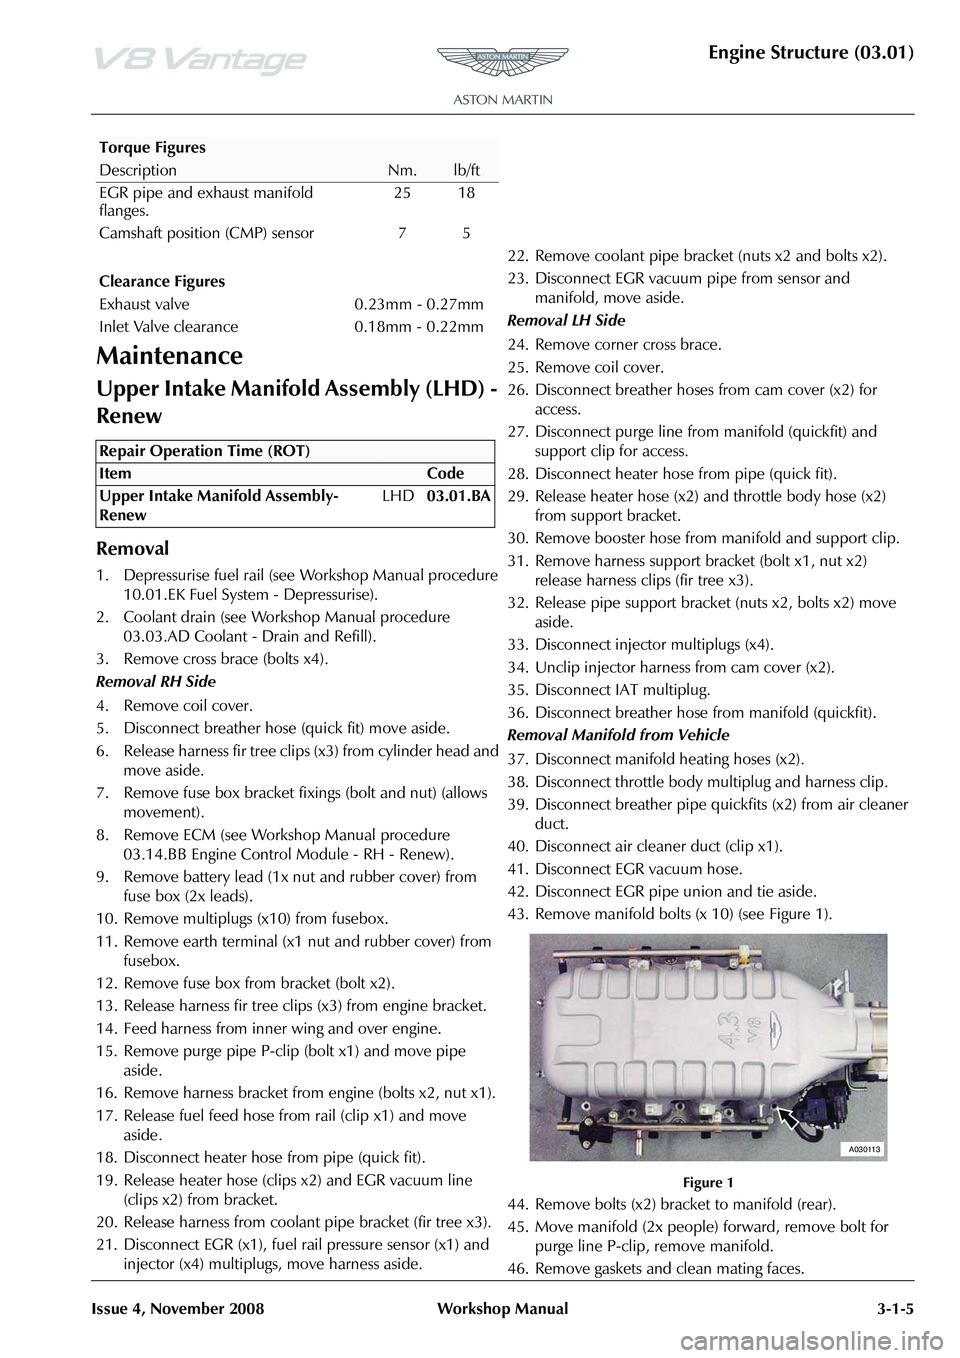 ASTON MARTIN V8 VANTAGE 2010  Workshop Manual Engine Structure (03.01)
Issue 4, November 2008Workshop Manual 3-1-5
Maintenance
Upper Intake Manifold Assembly (LHD) - 
Renew
Removal
1. Depressurise fuel rail (see Workshop Manual procedure 
10.01.E